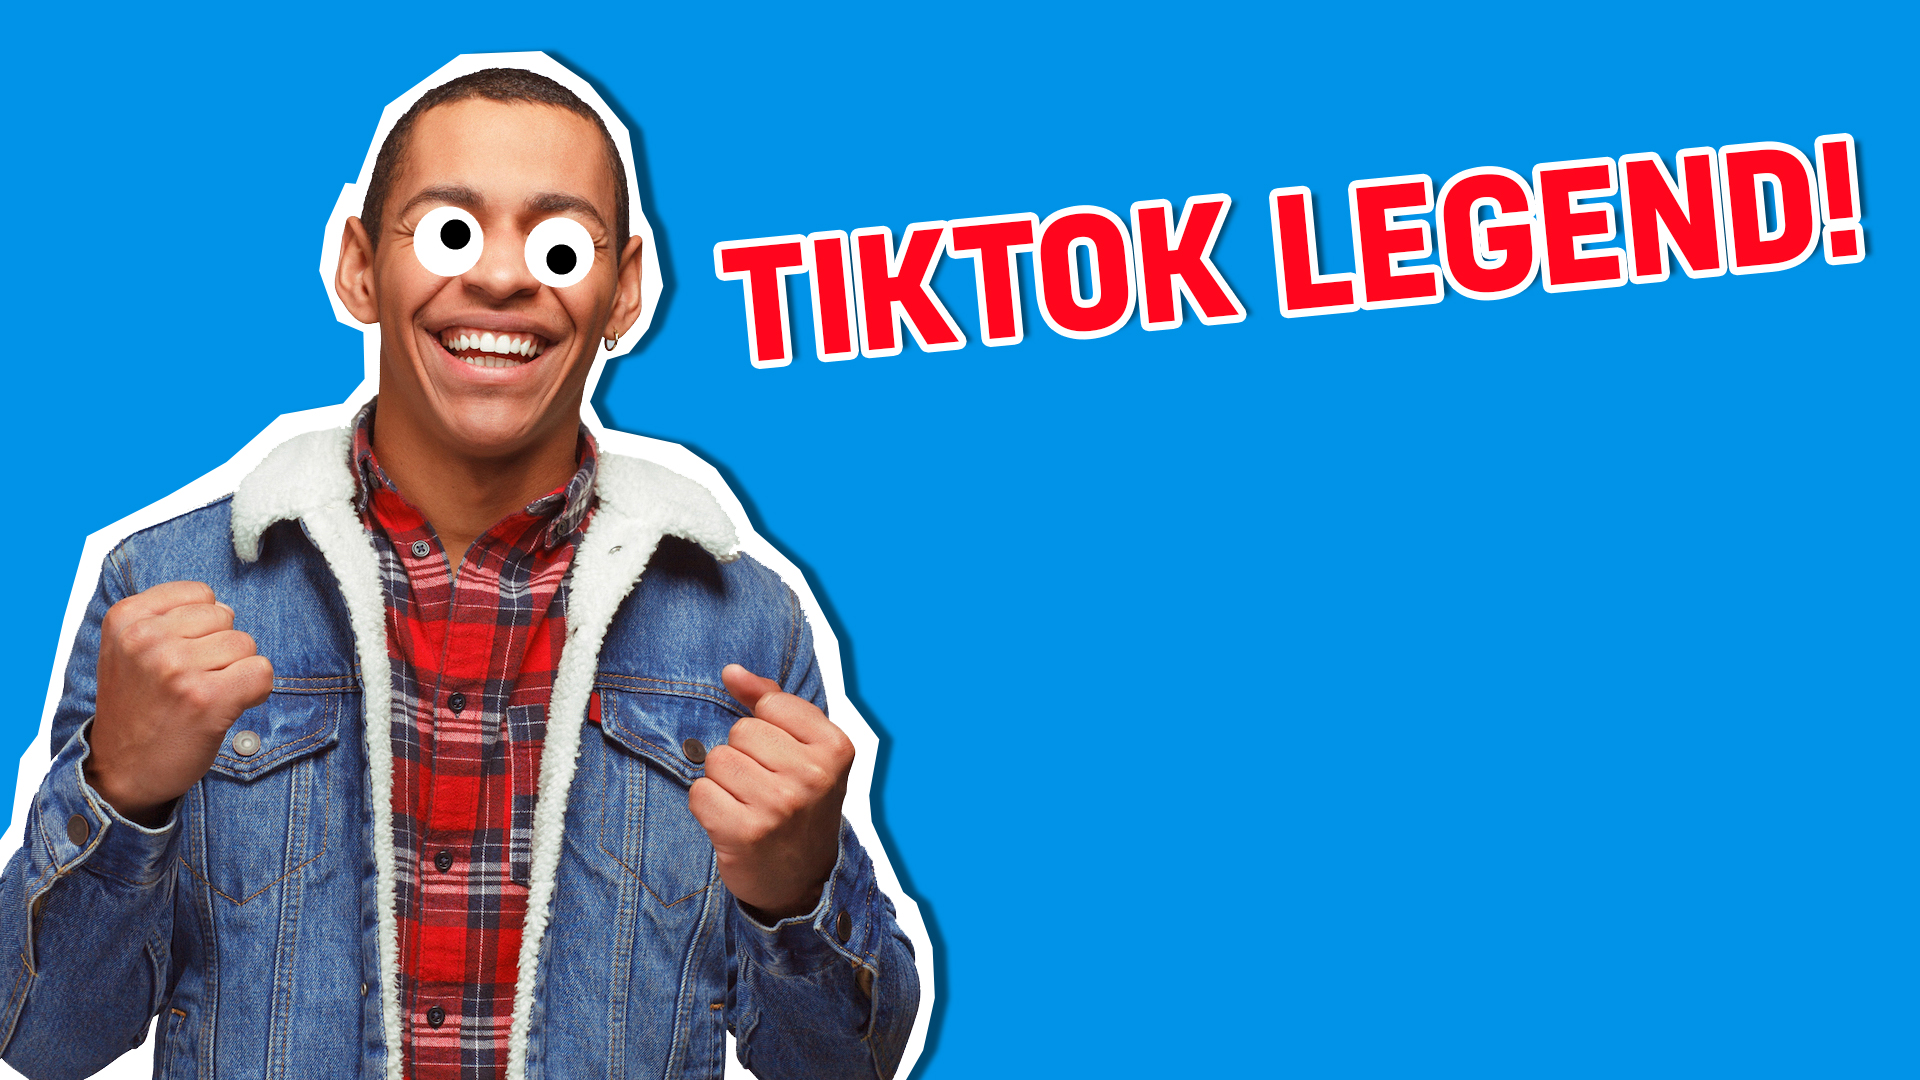 TikTok Legend